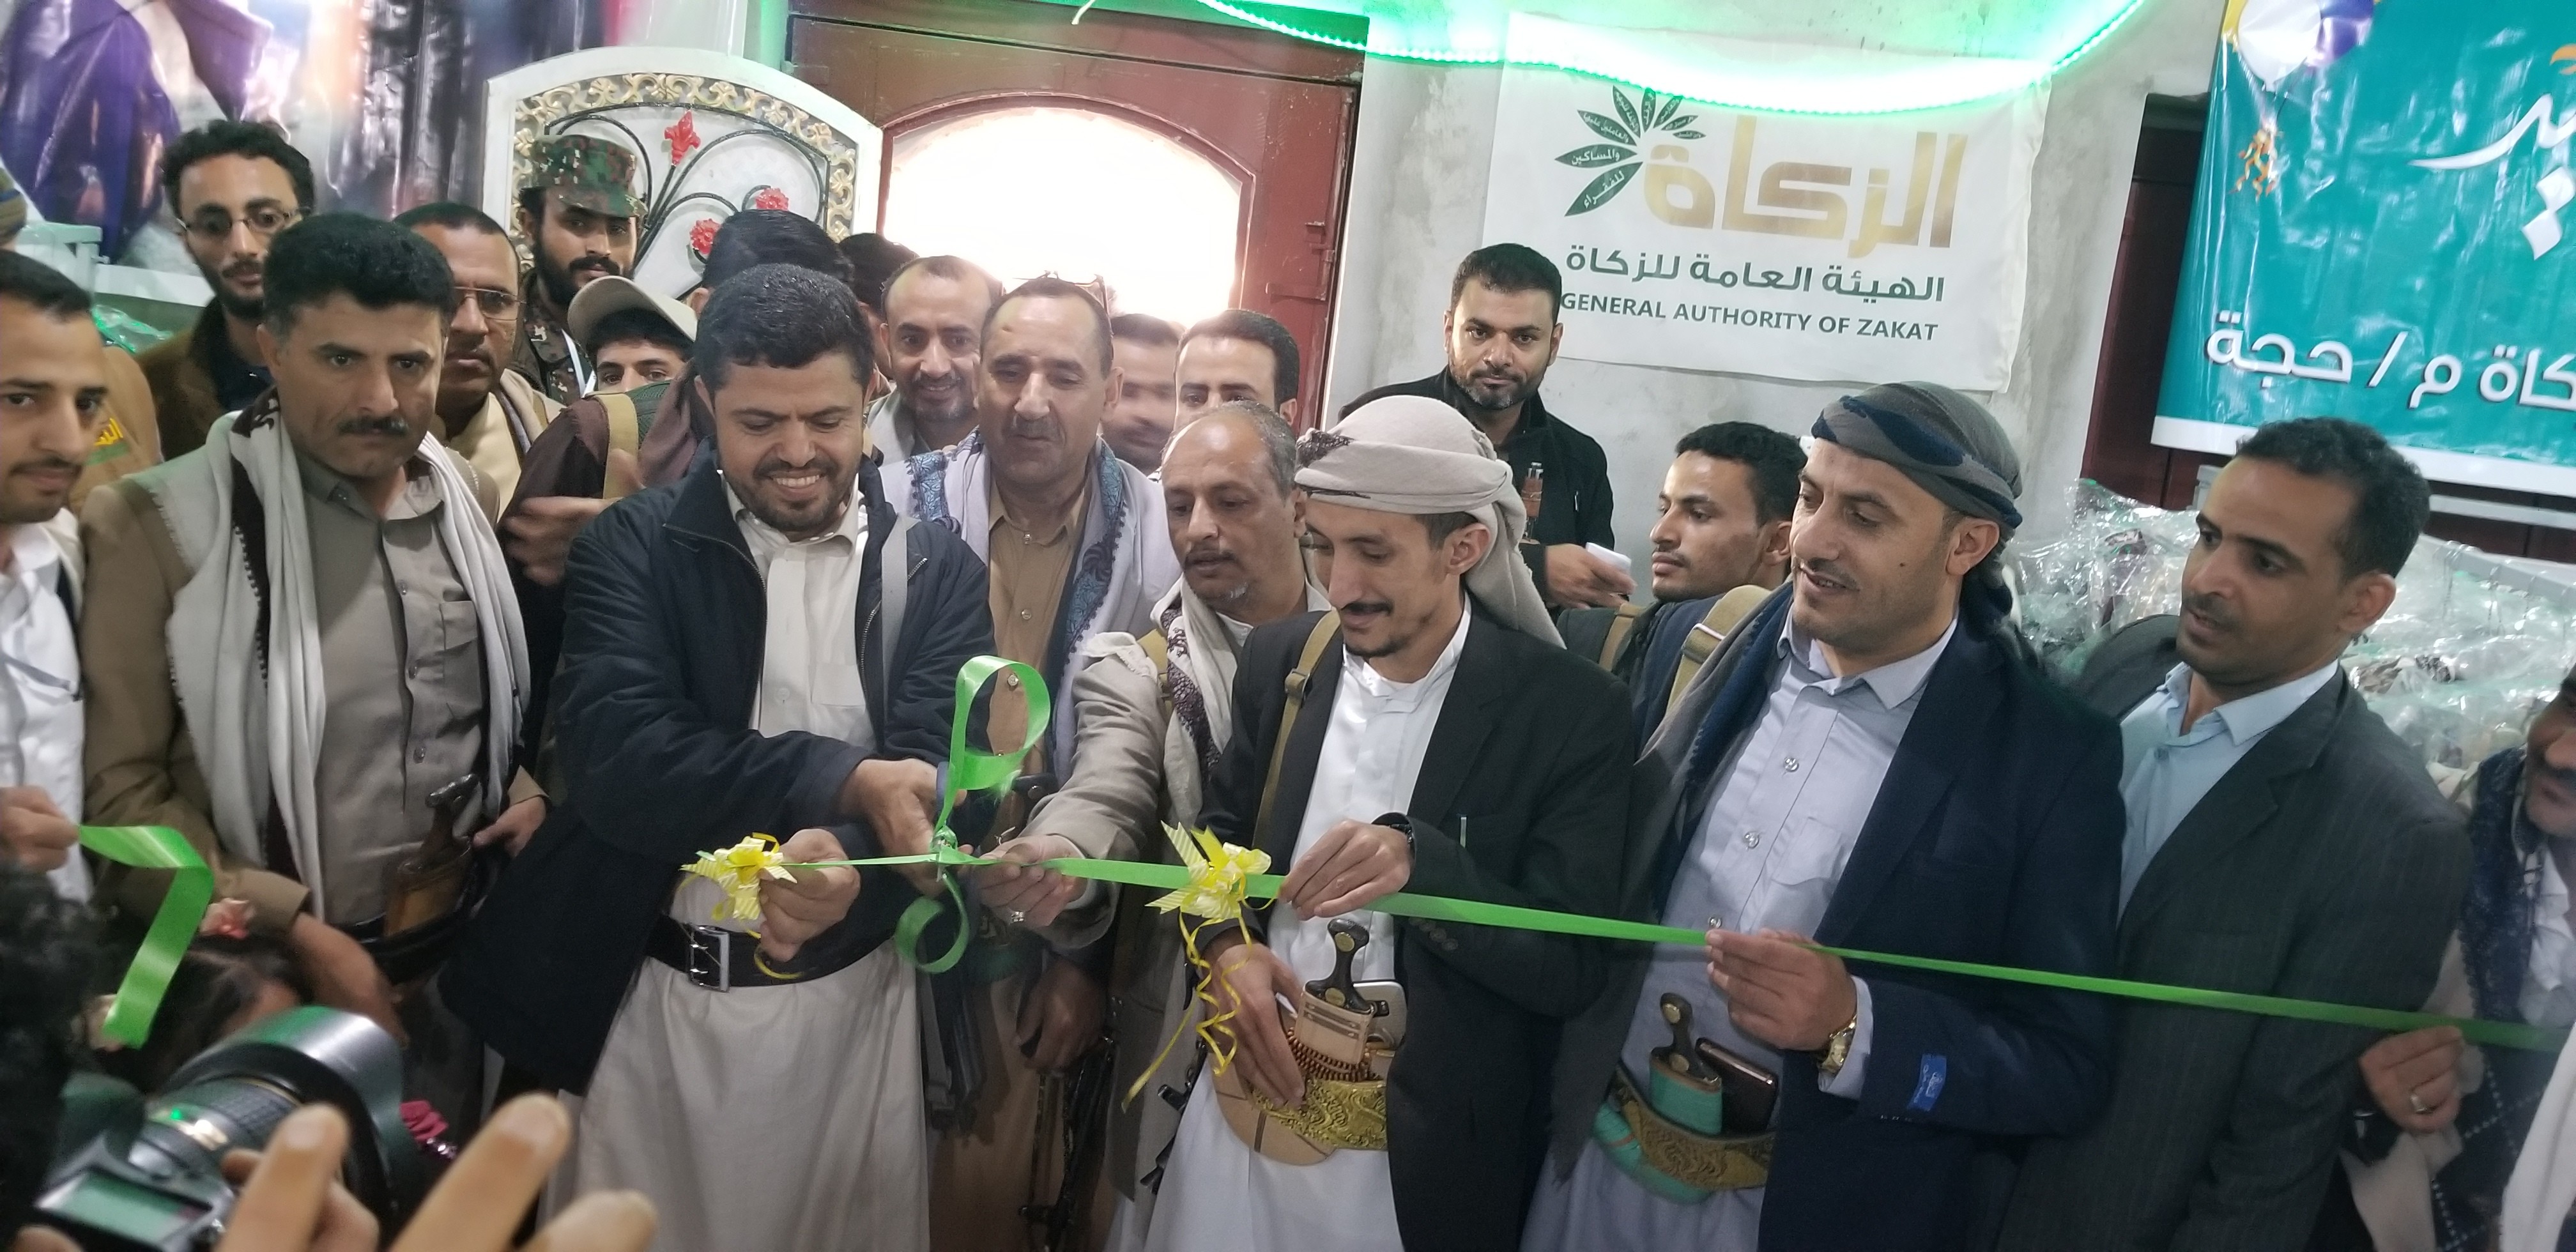  إفتتاح معرض كسوة العيد للفقراء والمساكين بمحافظة حجة 05 05 2021